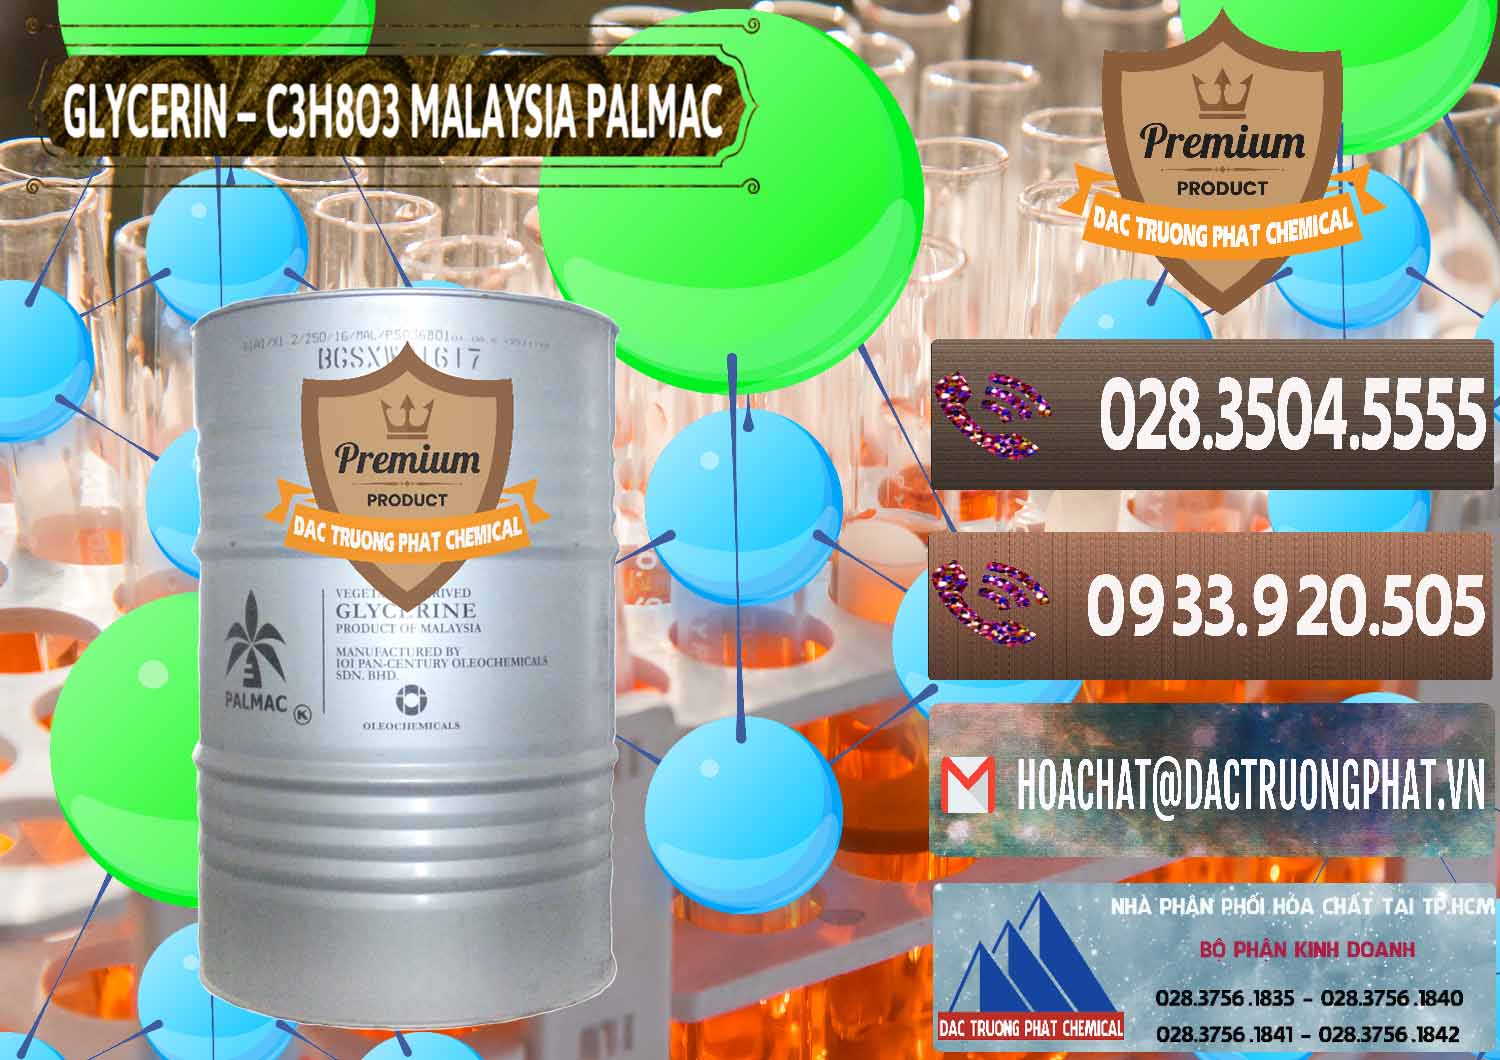 Nơi bán _ cung cấp Glycerin – C3H8O3 99.7% Malaysia Palmac - 0067 - Cty cung ứng và phân phối hóa chất tại TP.HCM - hoachatviet.net